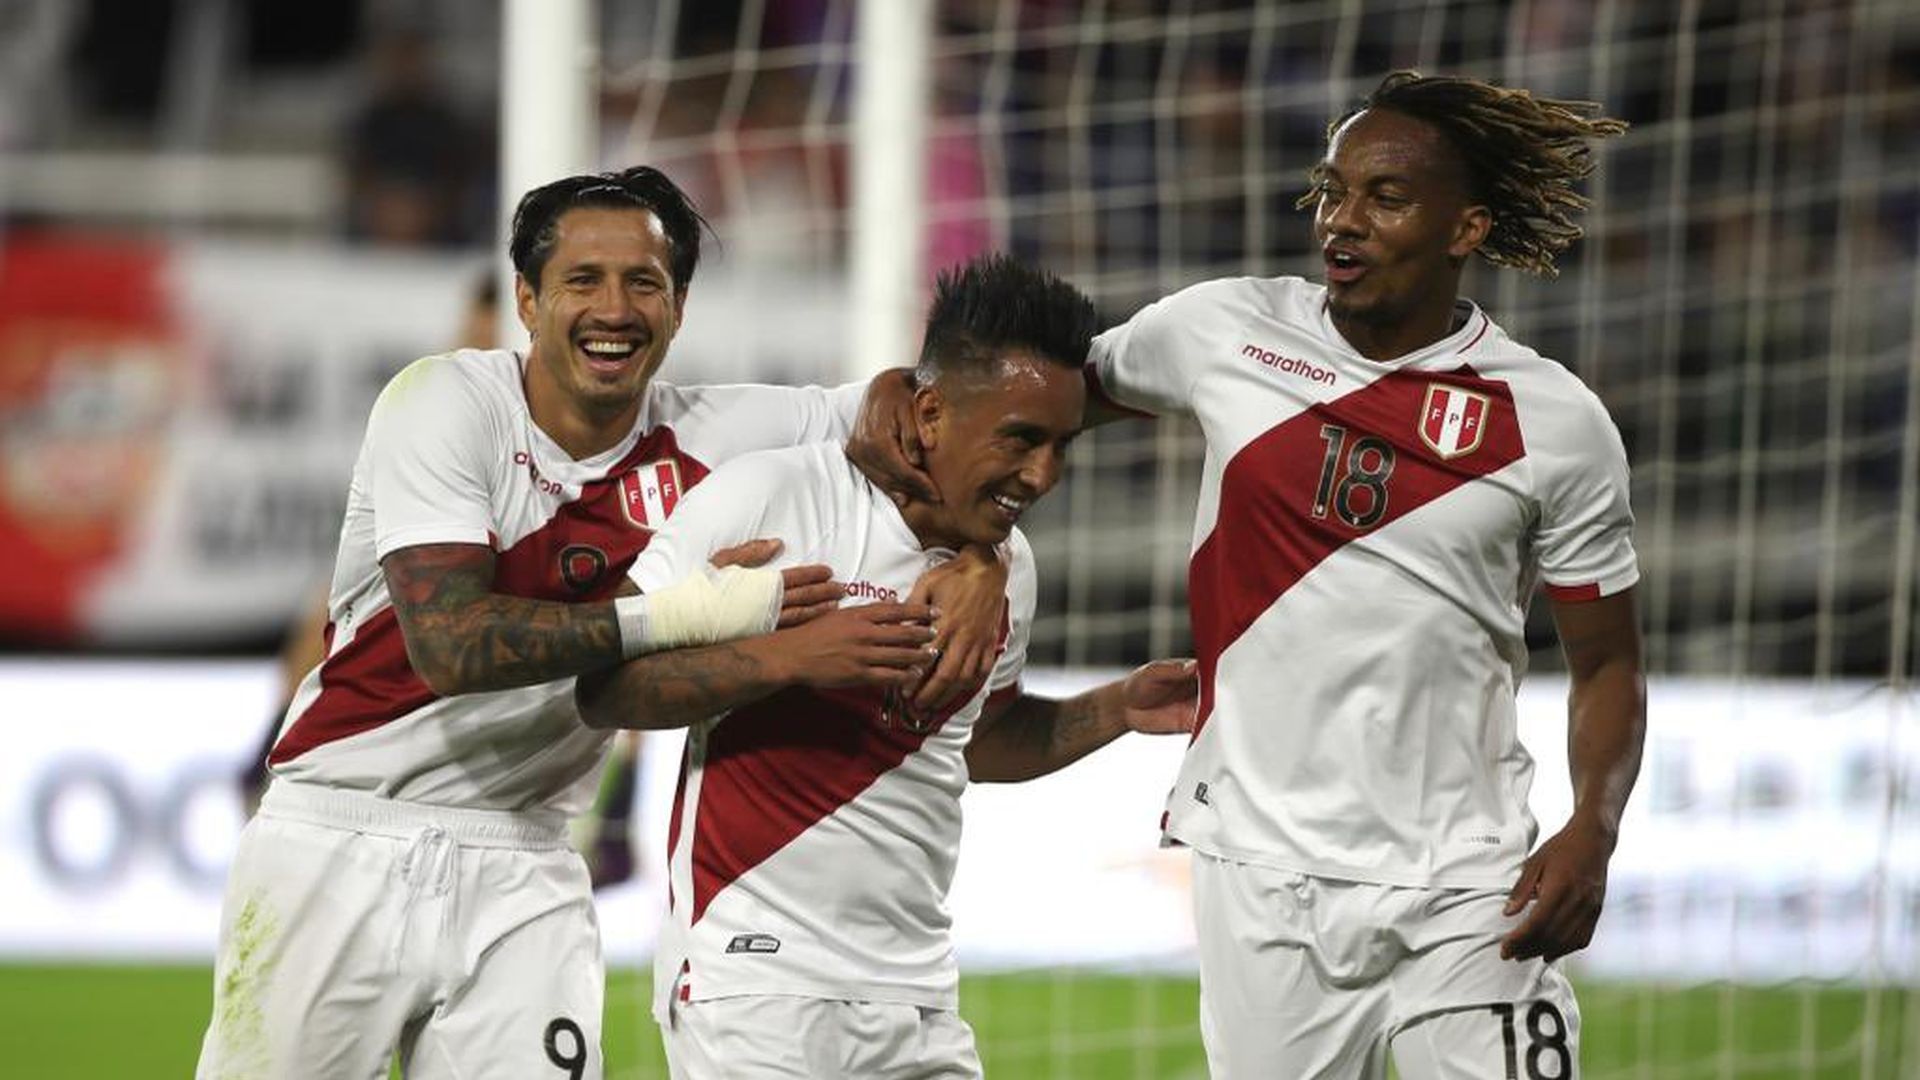 Perú vs El Salvador 4-1: goles y resumen del triunfo de la ‘blanquirroja’ en partido amistoso